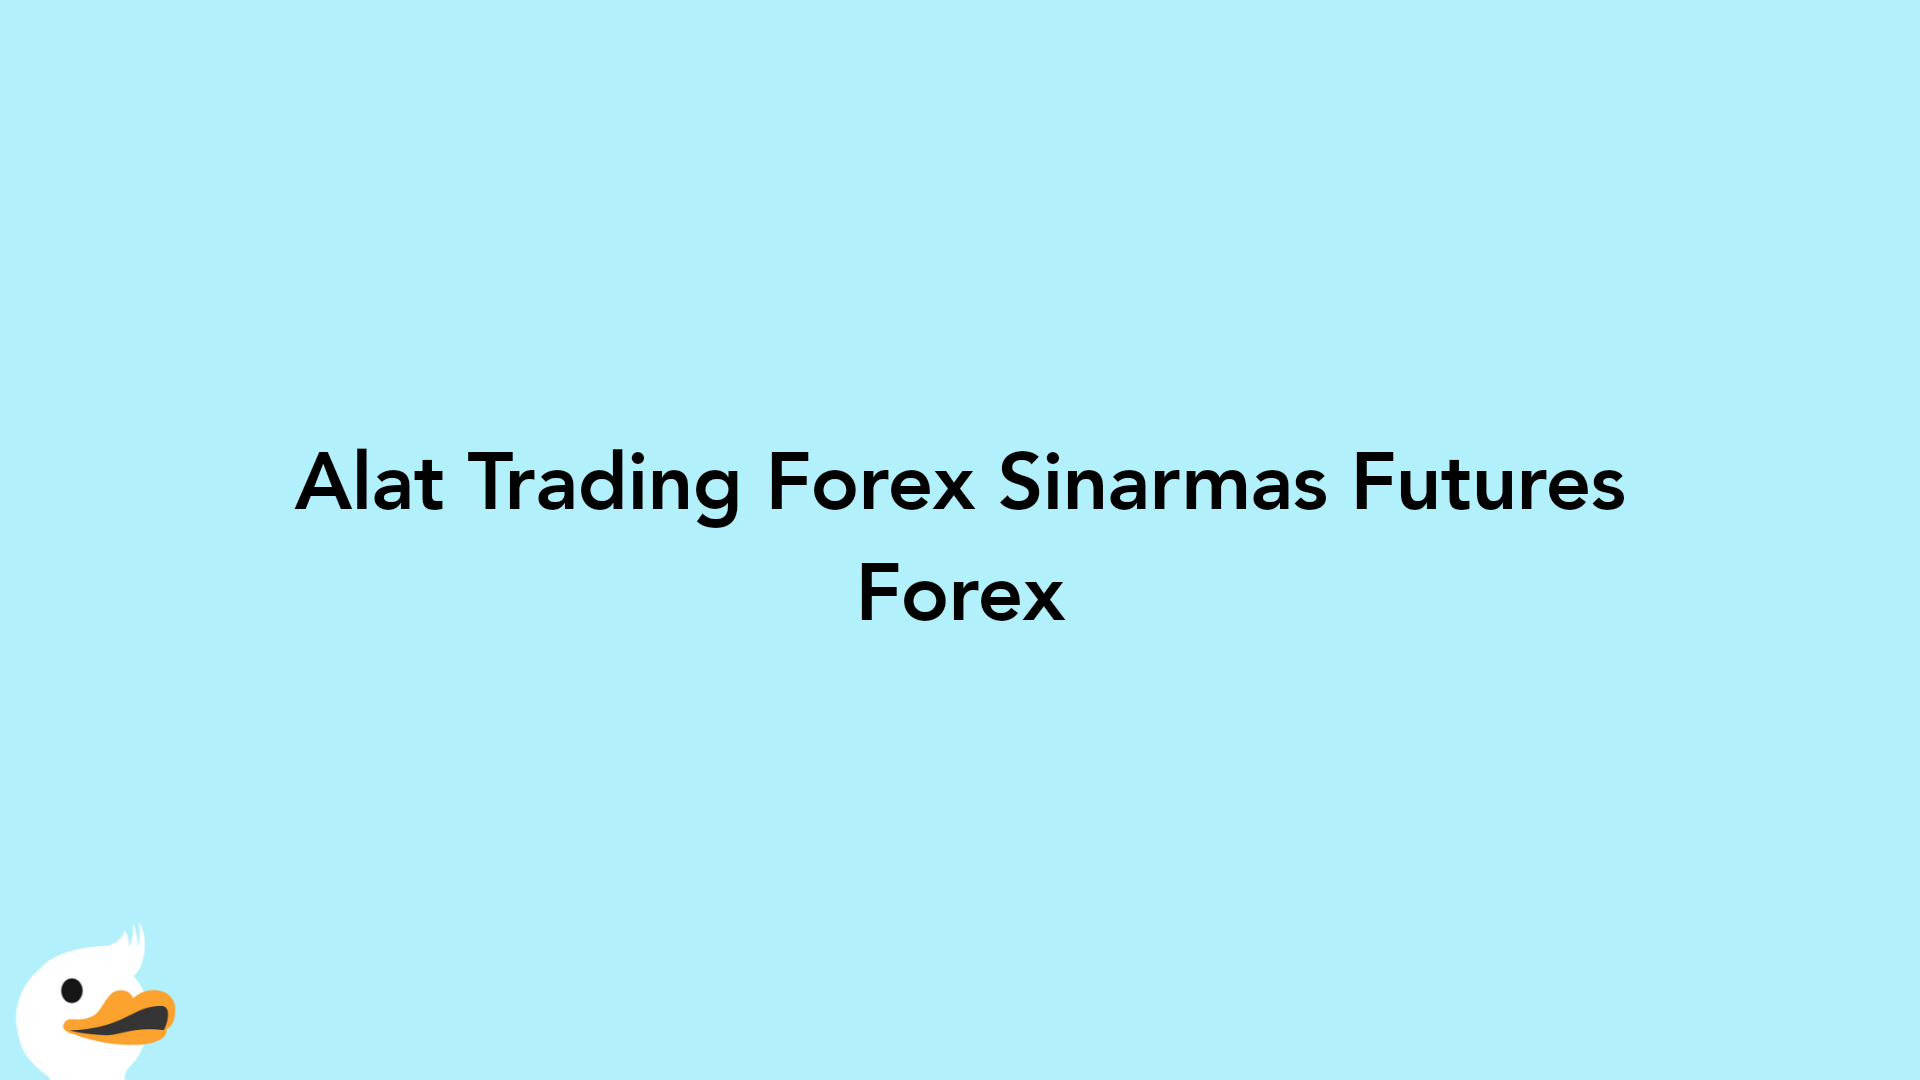 Alat Trading Forex Sinarmas Futures Forex